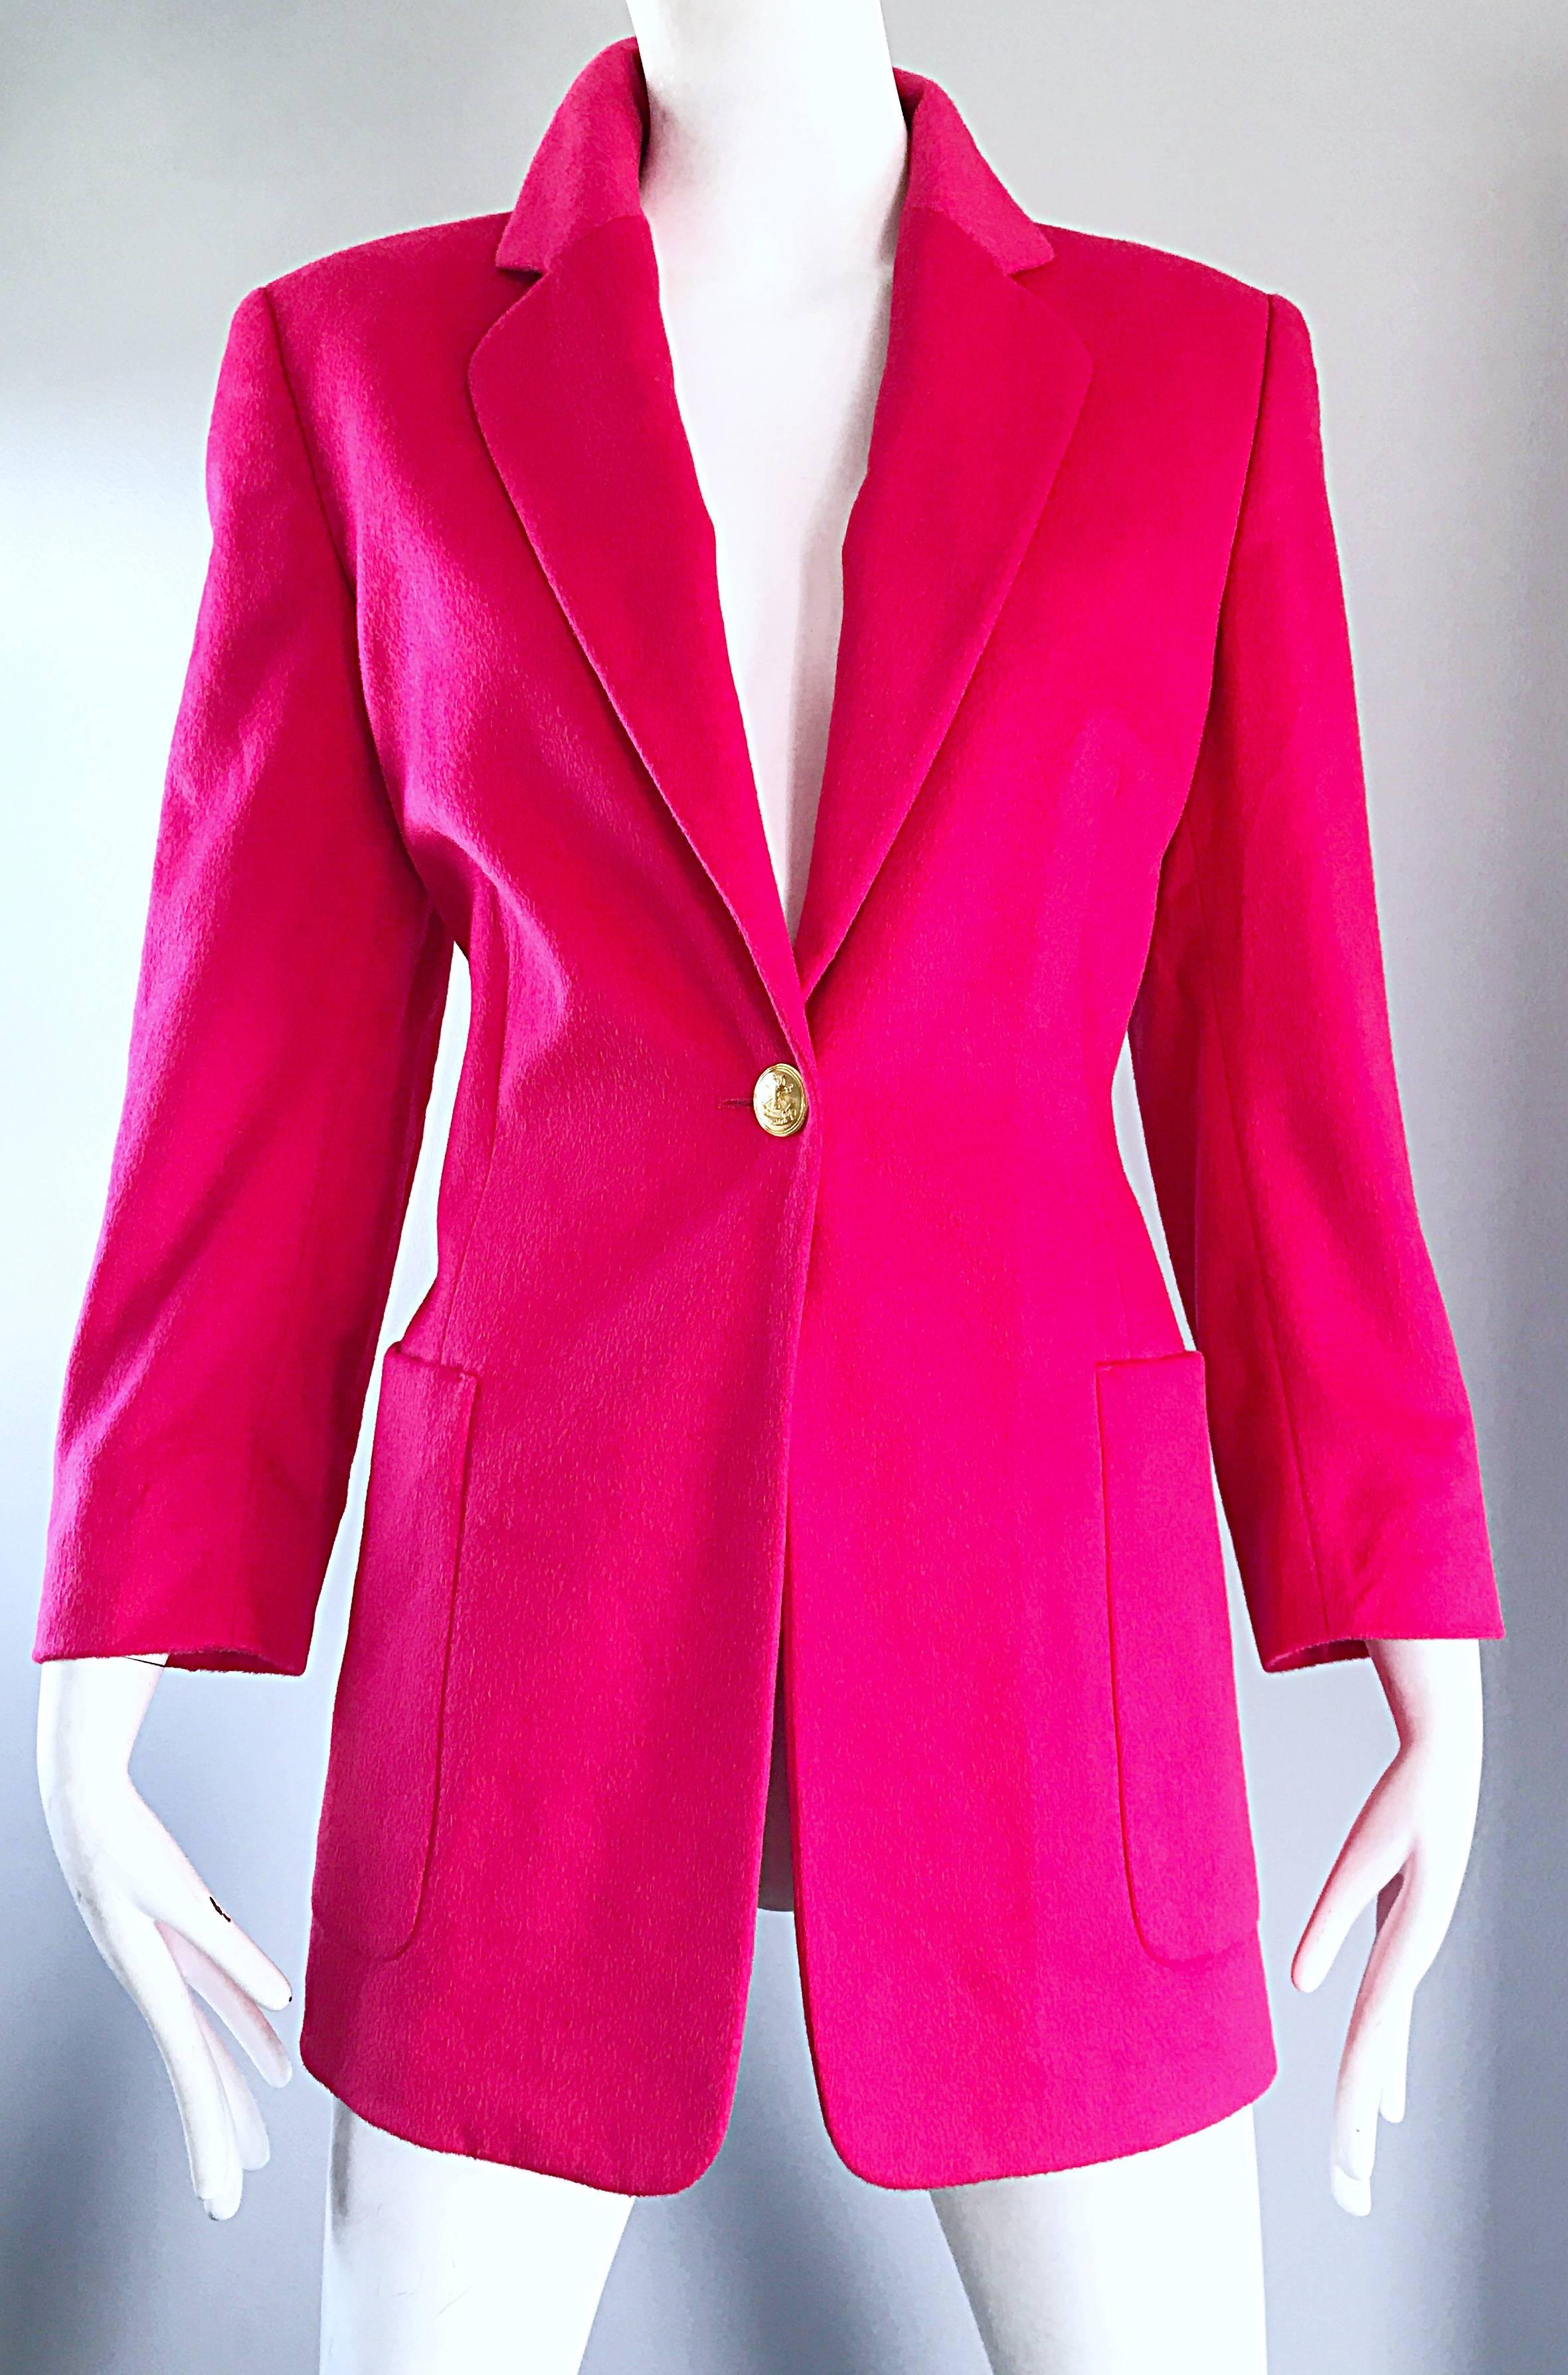 shocking pink jacket